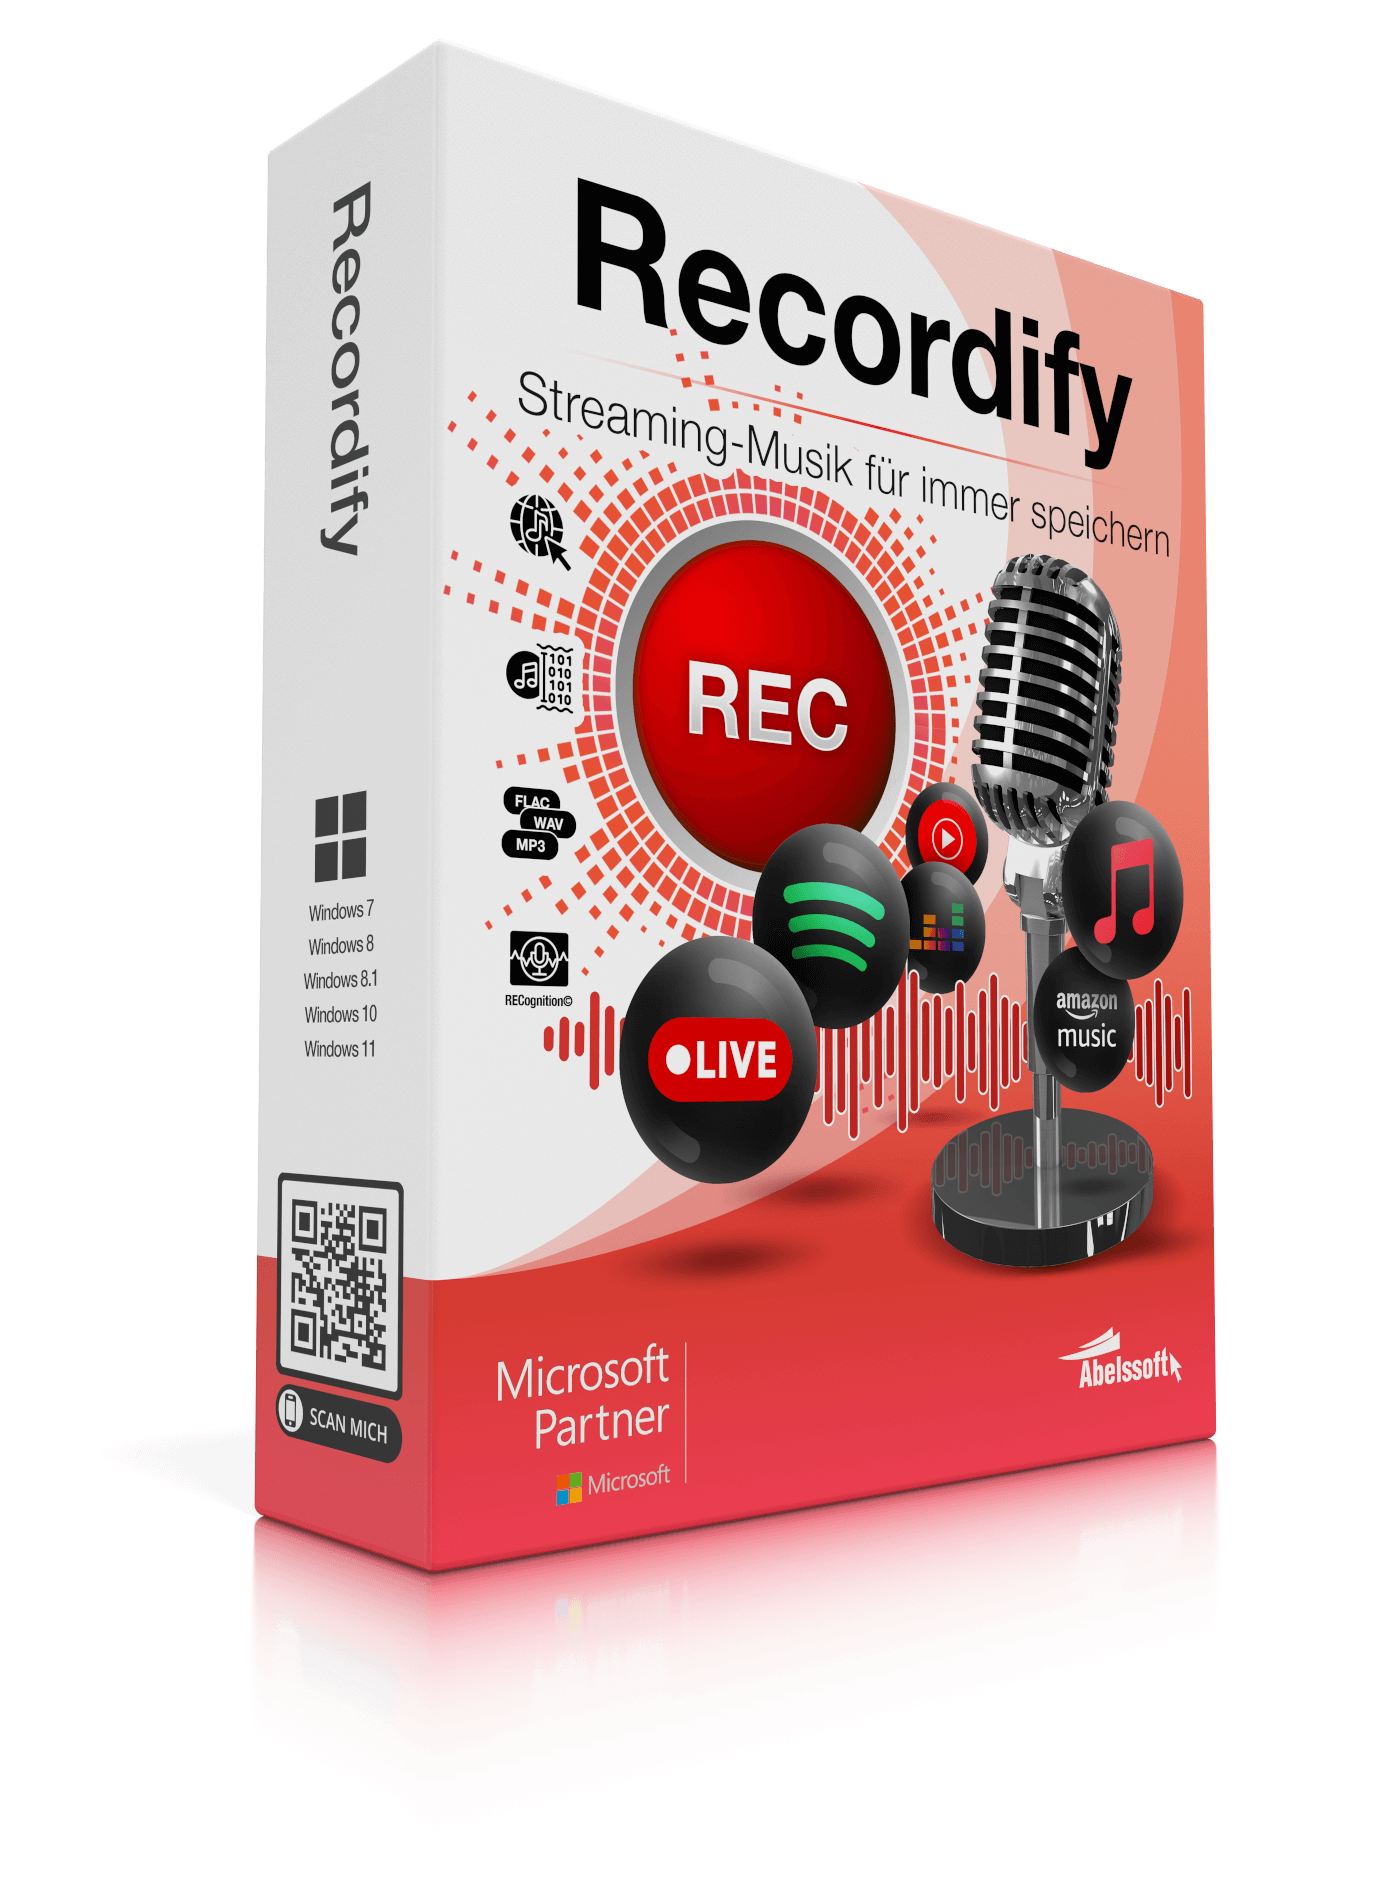 Recordify